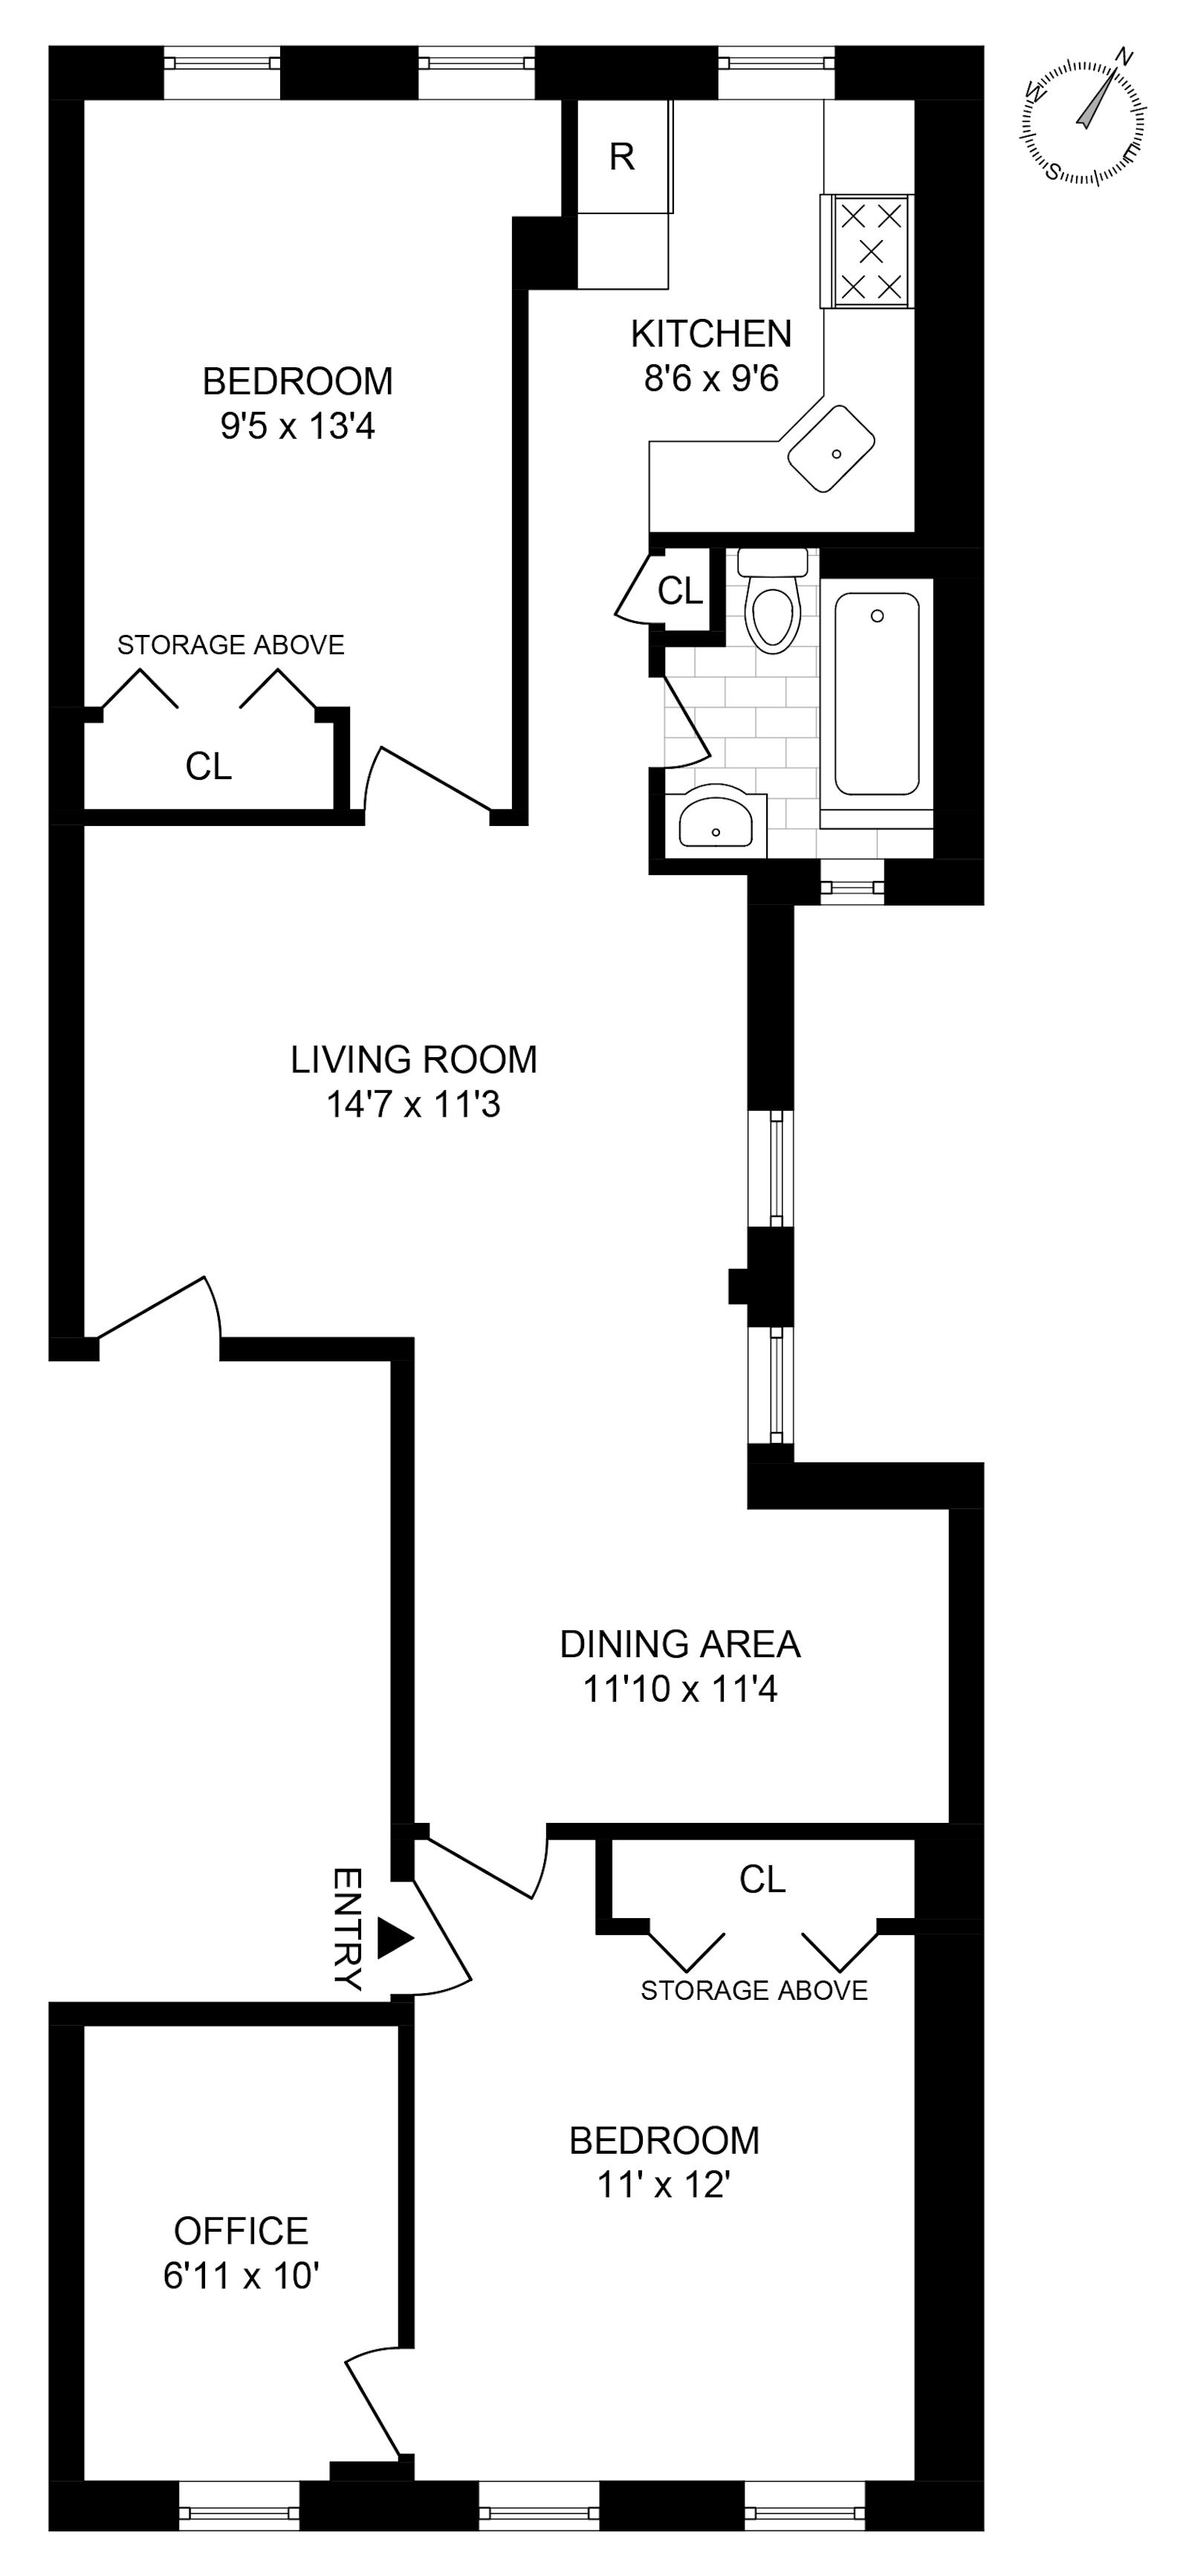 Floorplan for 1397 Jefferson Avenue, 2